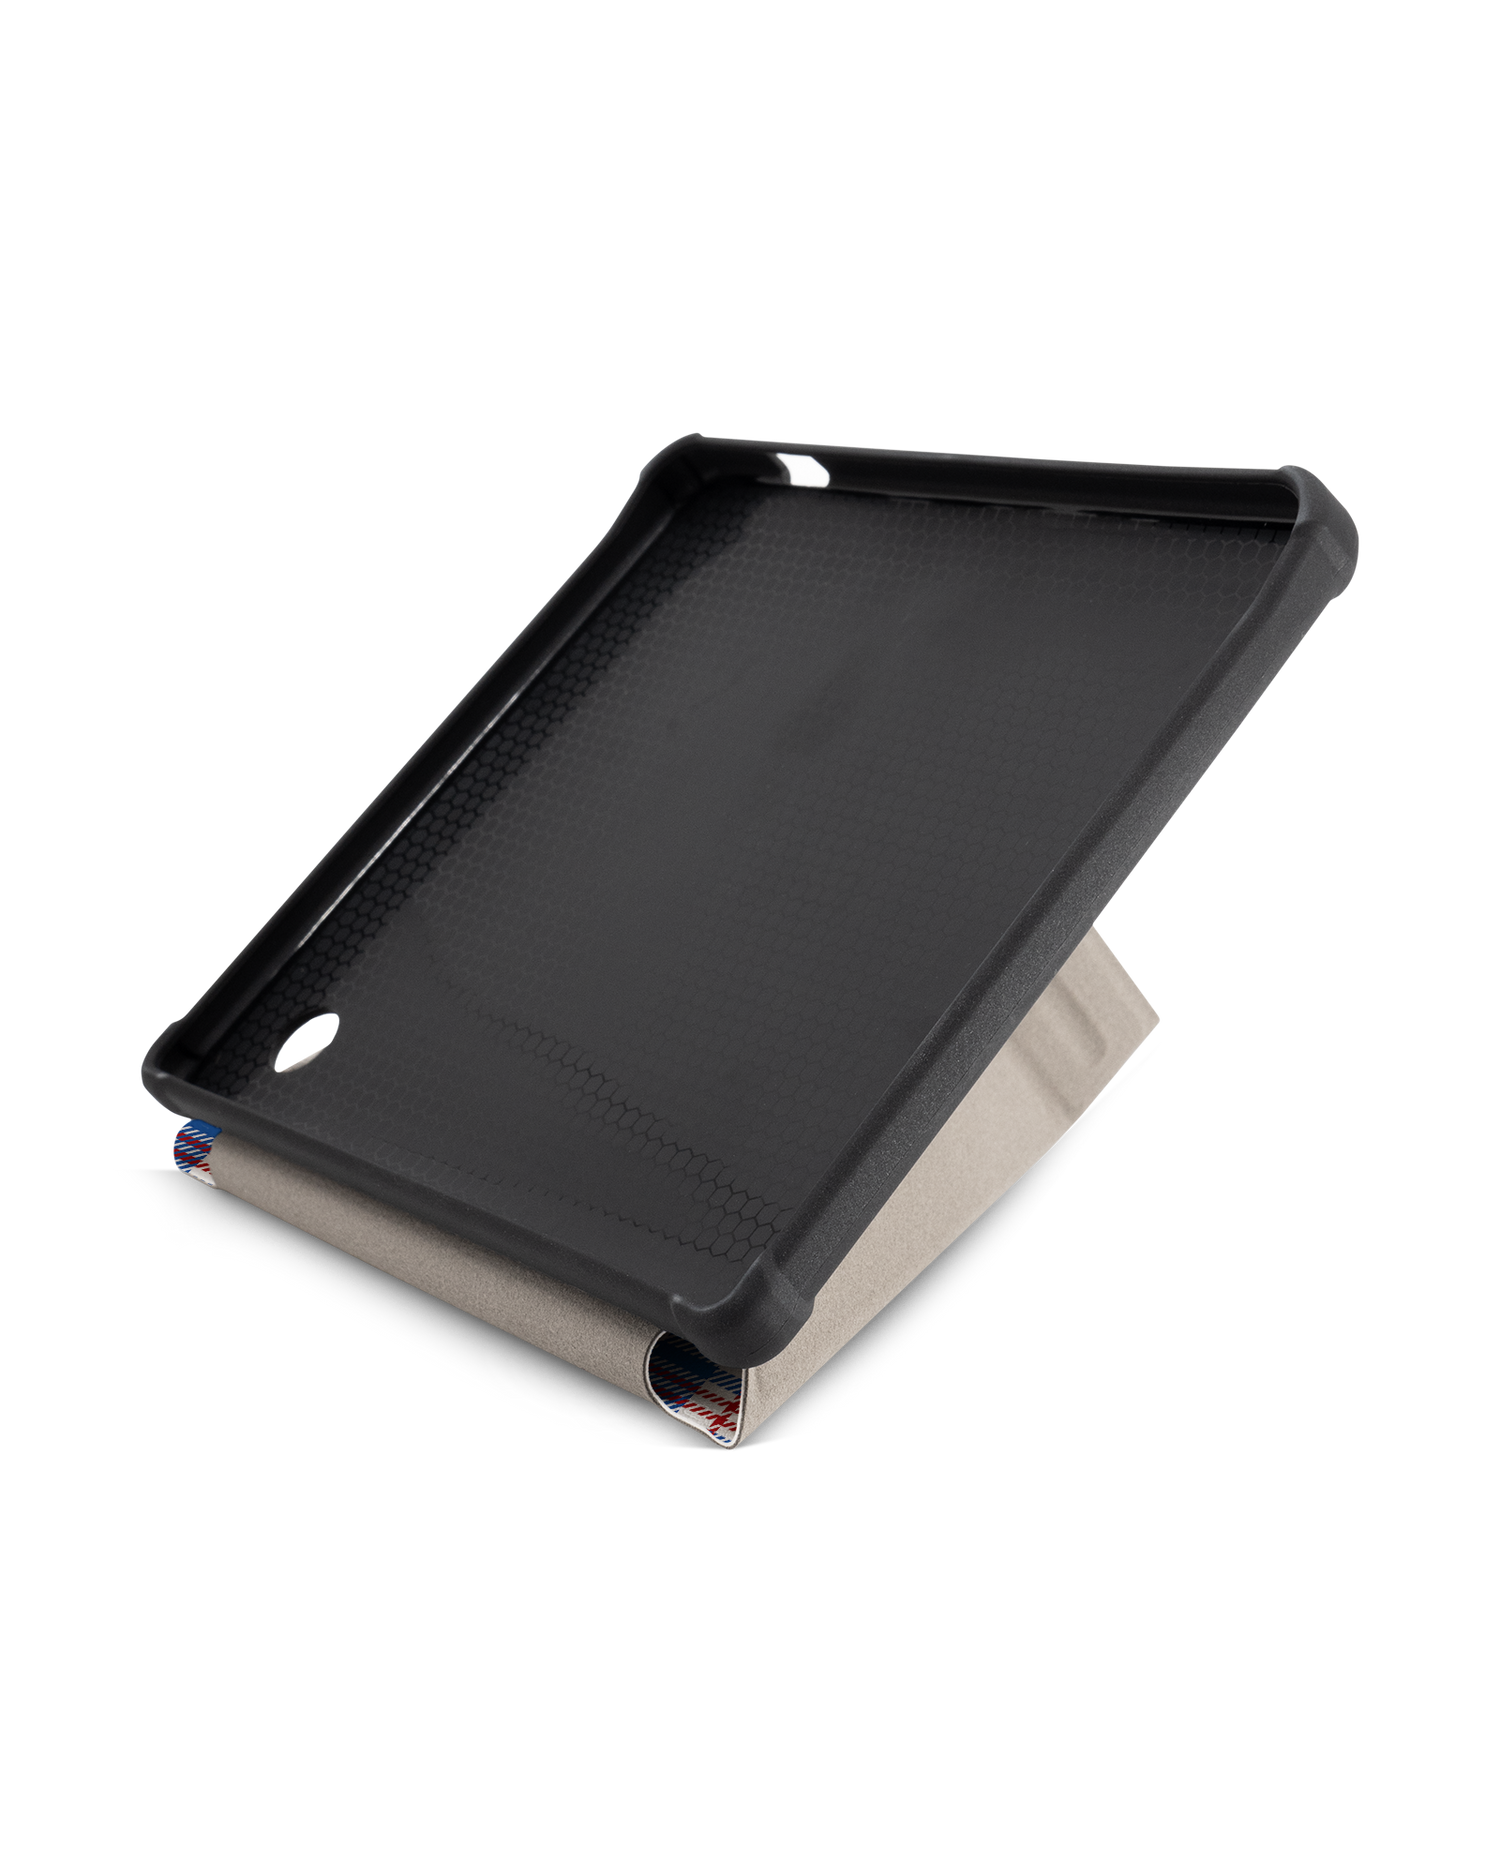 Plaid Market Bag eBook-Reader Smart Case für tolino vision 5 (2019): Aufgestellt im Querformat Innenansicht